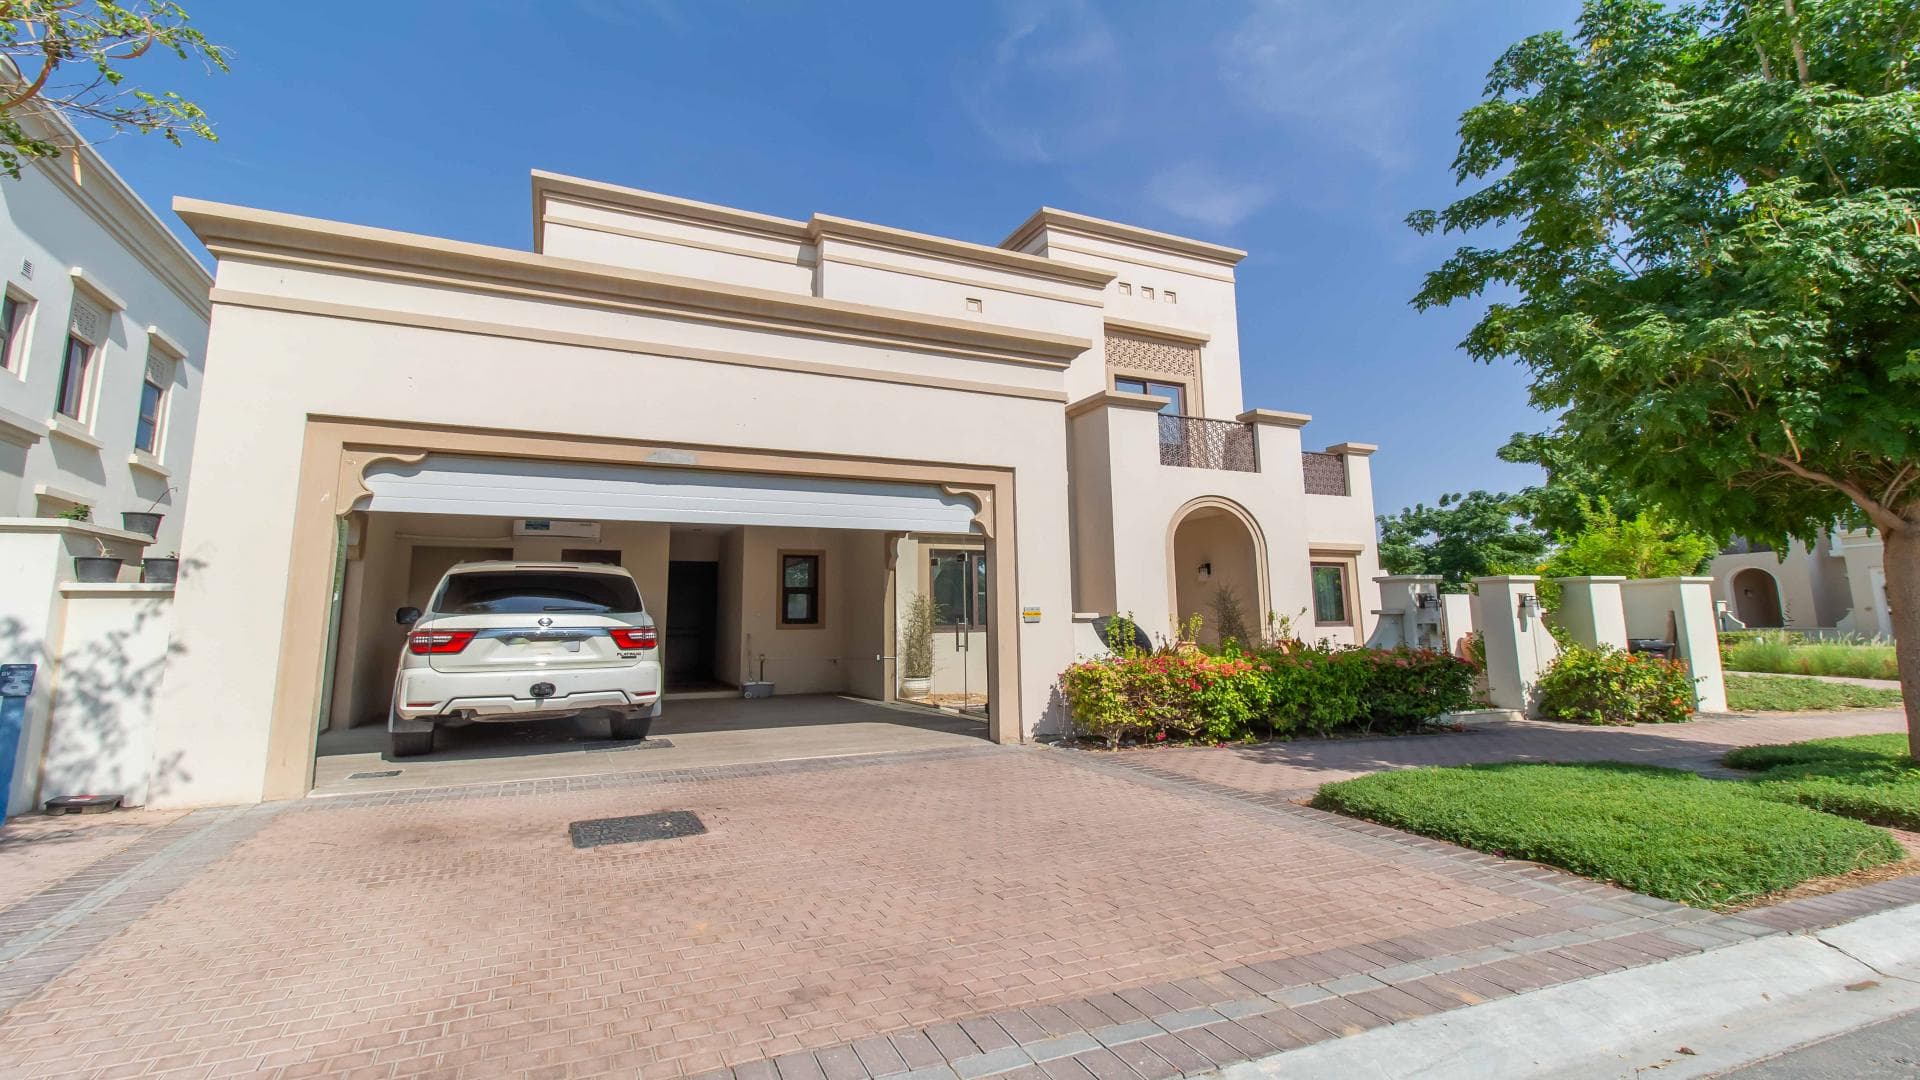 5 Bedroom Villa For Rent Al Bateen Residence Lp27831 246a382249725600.jpg